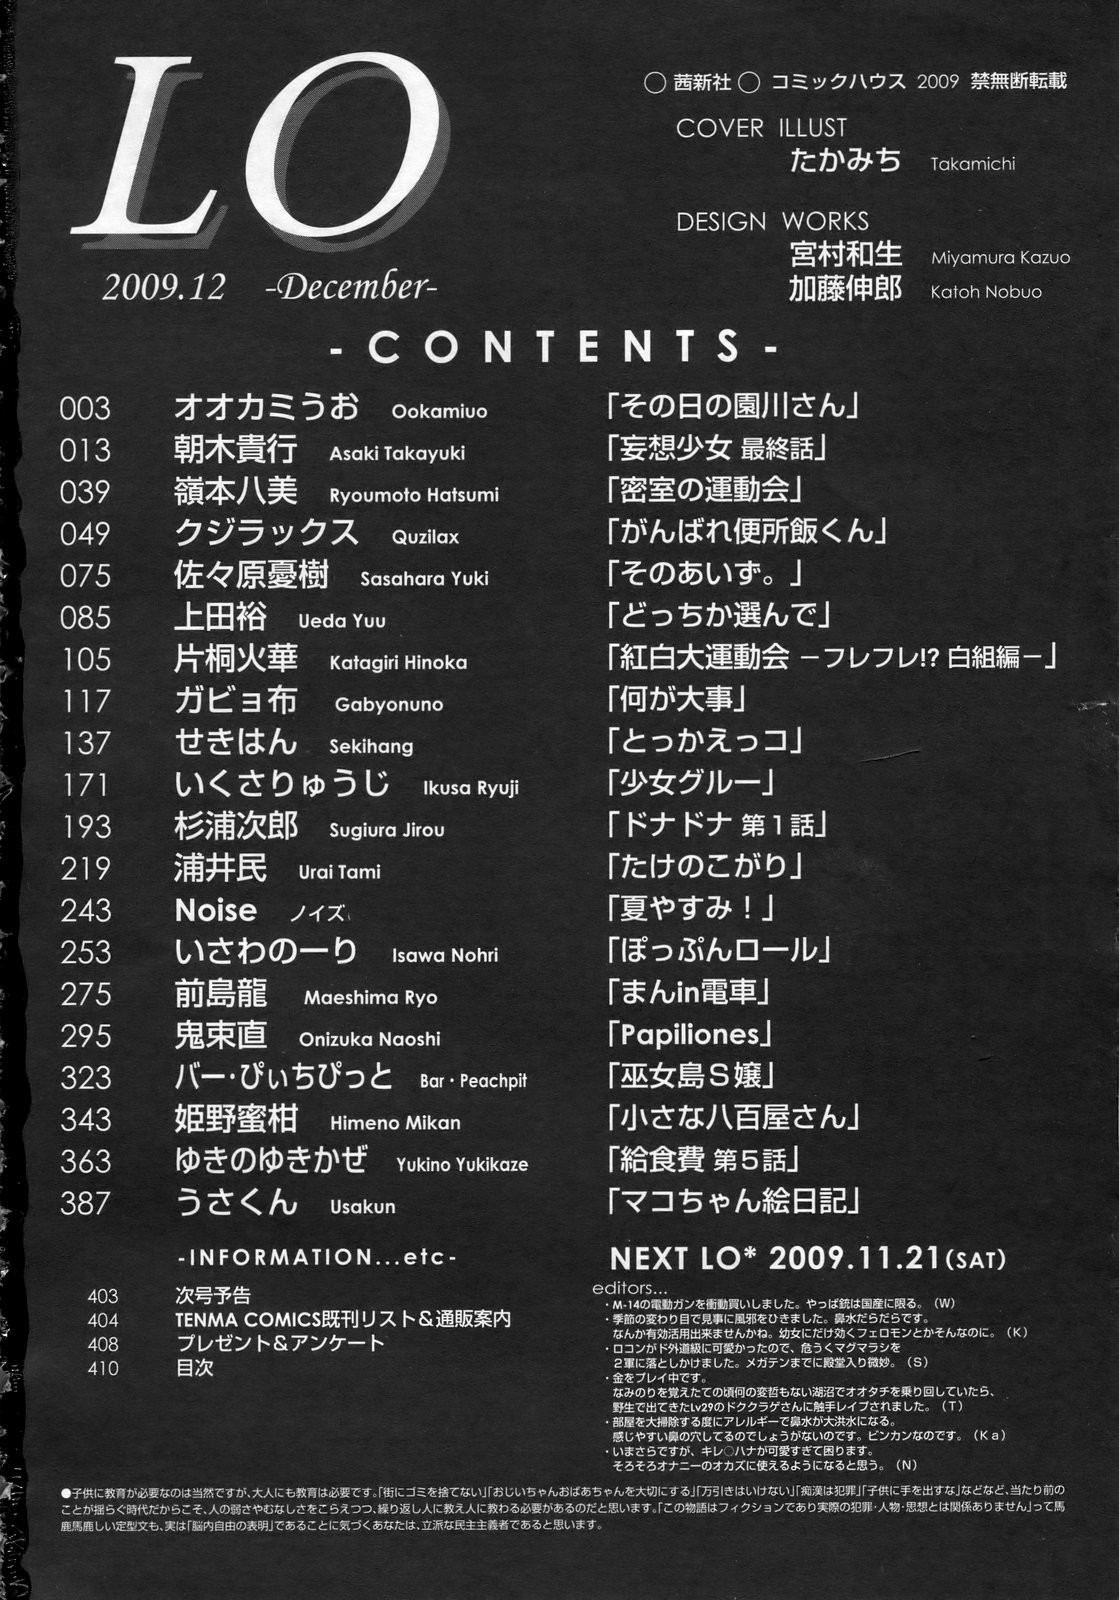 COMIC LO 2009年12月号 Vol.69